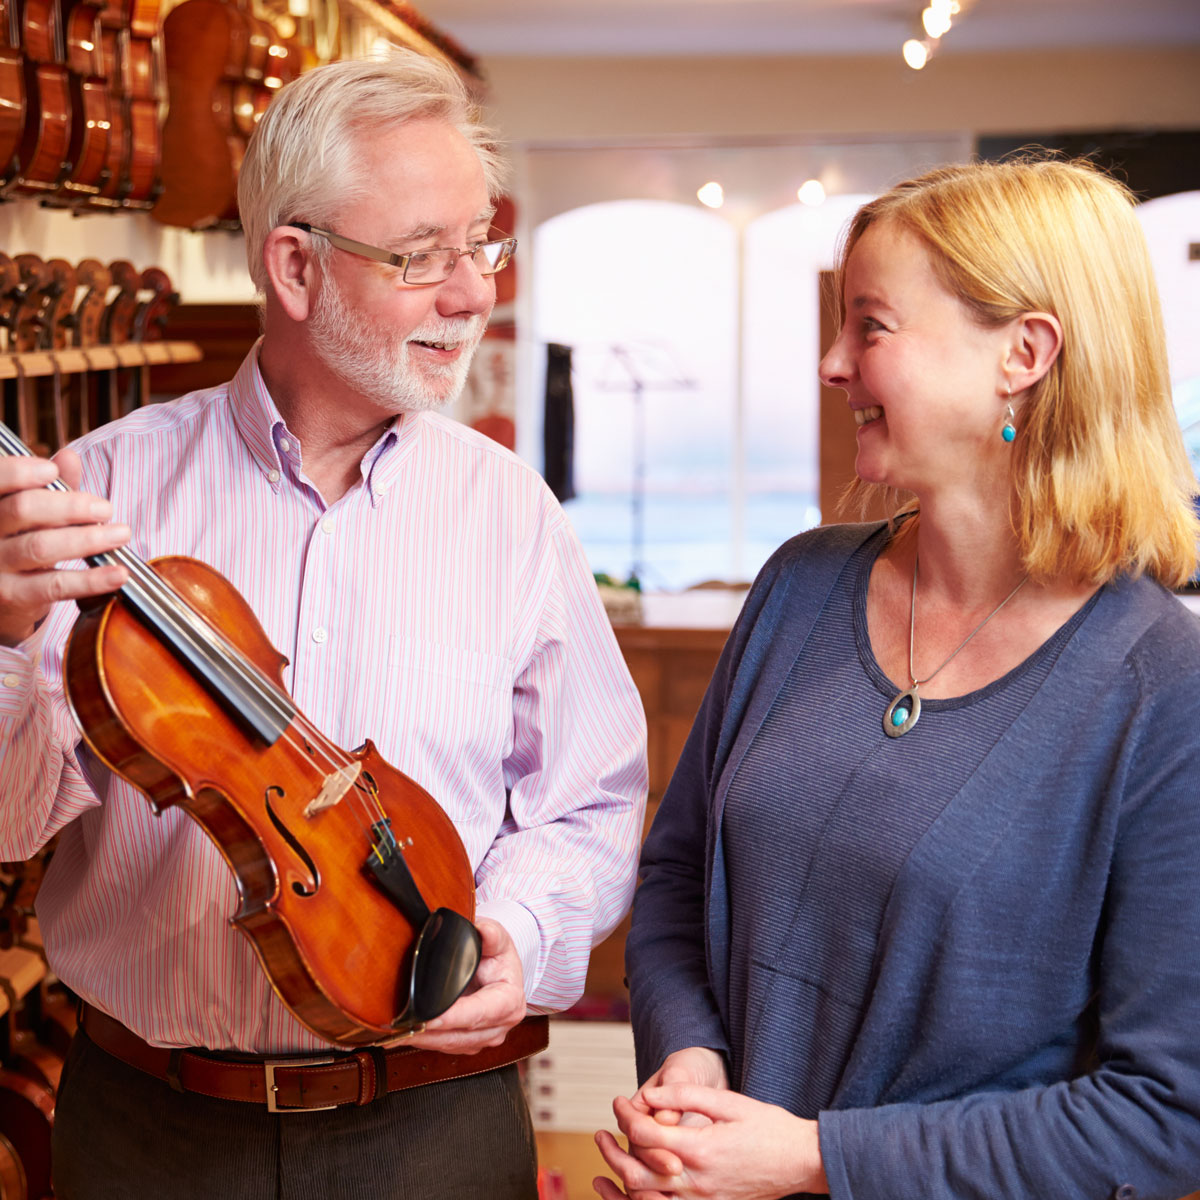 Propietarios de un negocio revisando el inventario de instrumentos musicales dentro de su tienda